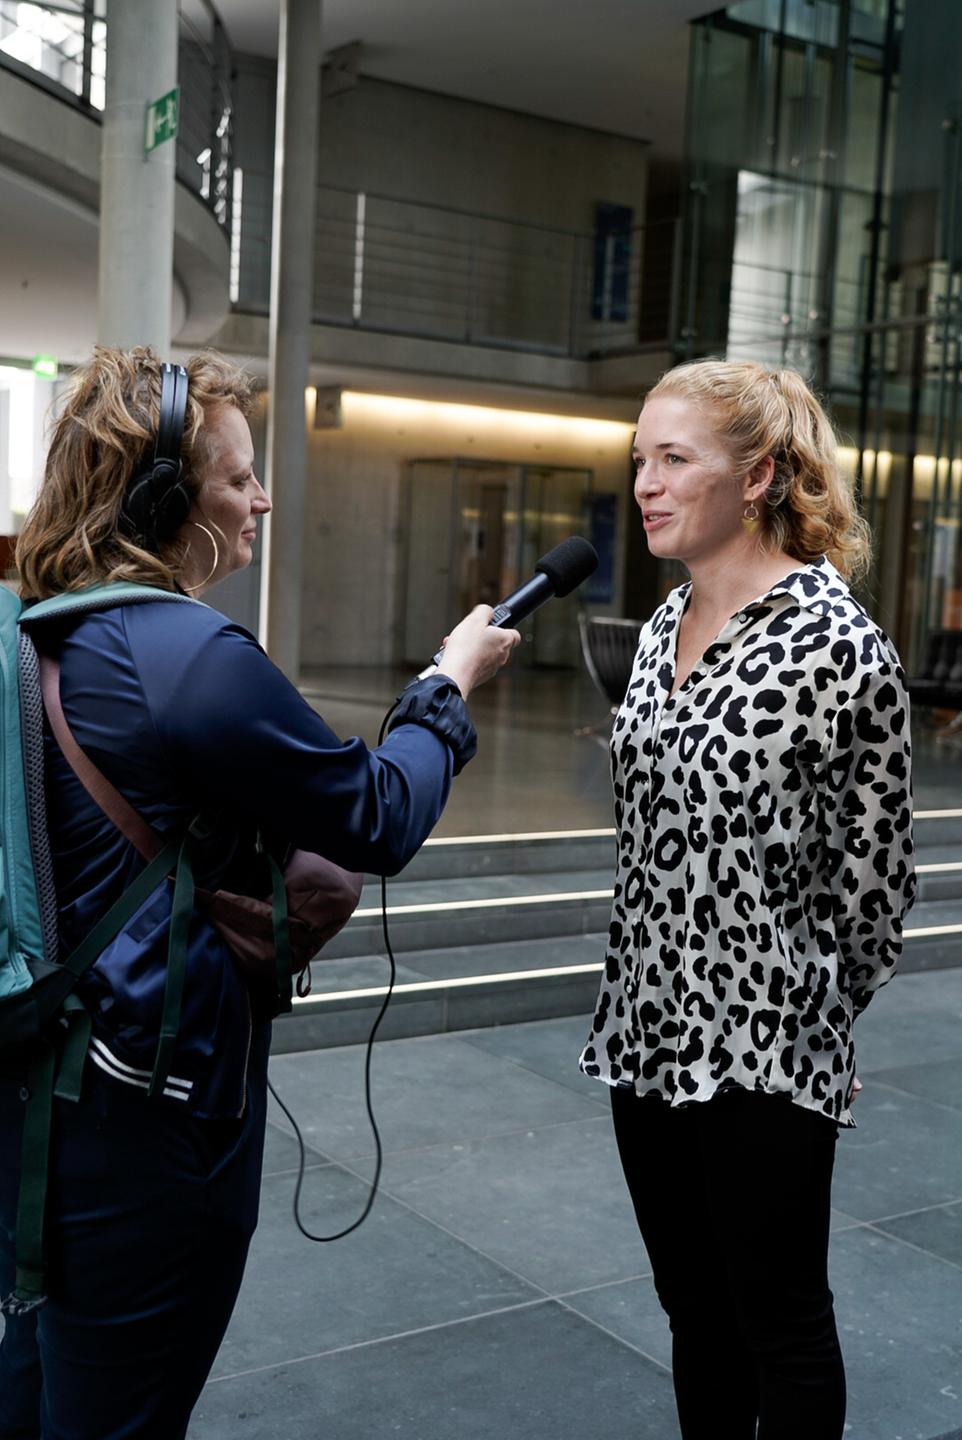 Eine Frau hält einer anderen Frau ein Mikrofon hin und interviewt sie.